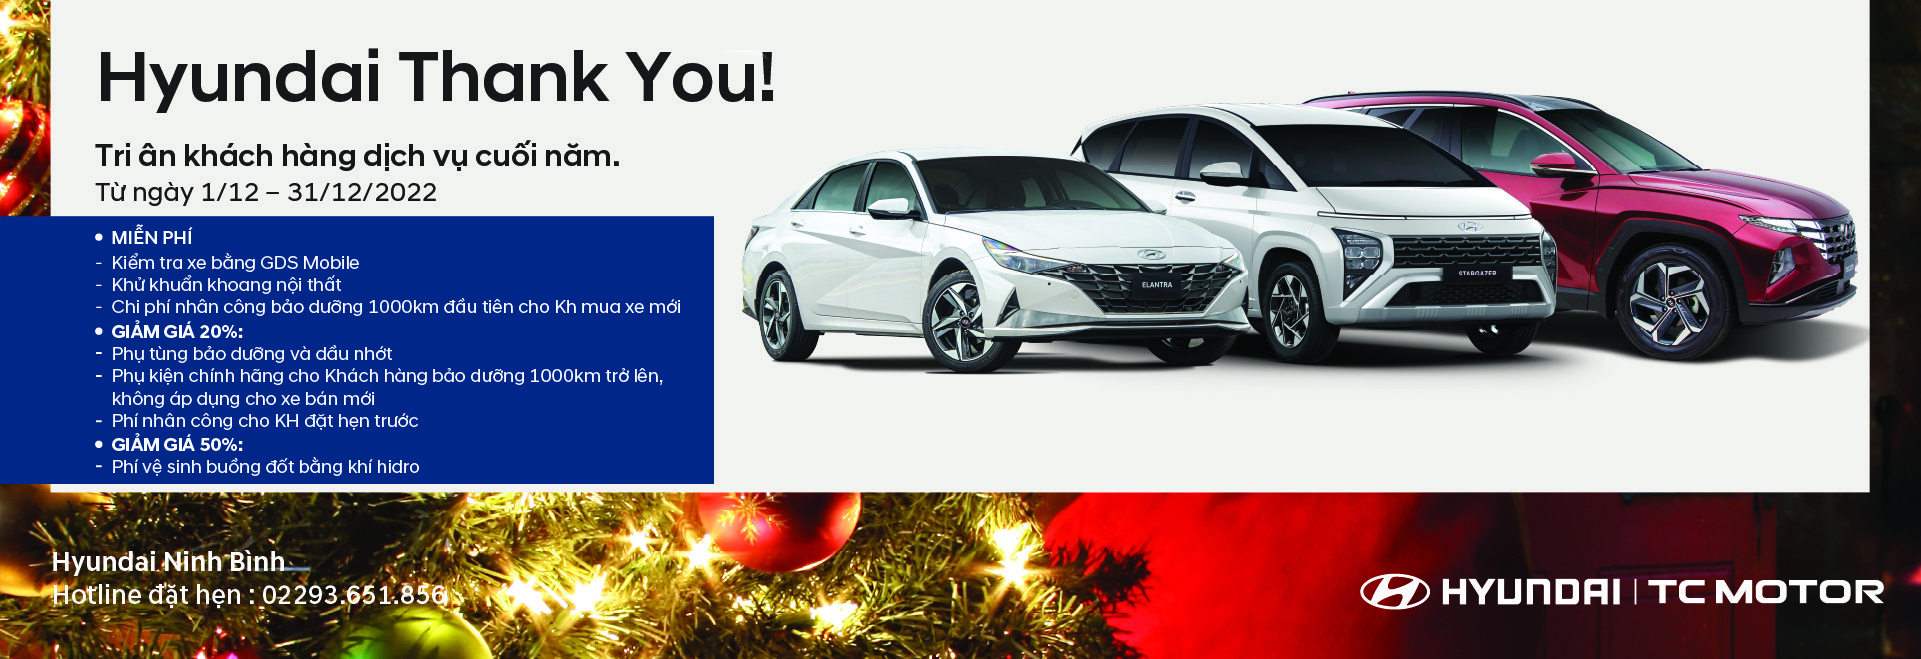 Chương trình khuyến mại dịch vụ tháng 12 - Hyundai Thank You!